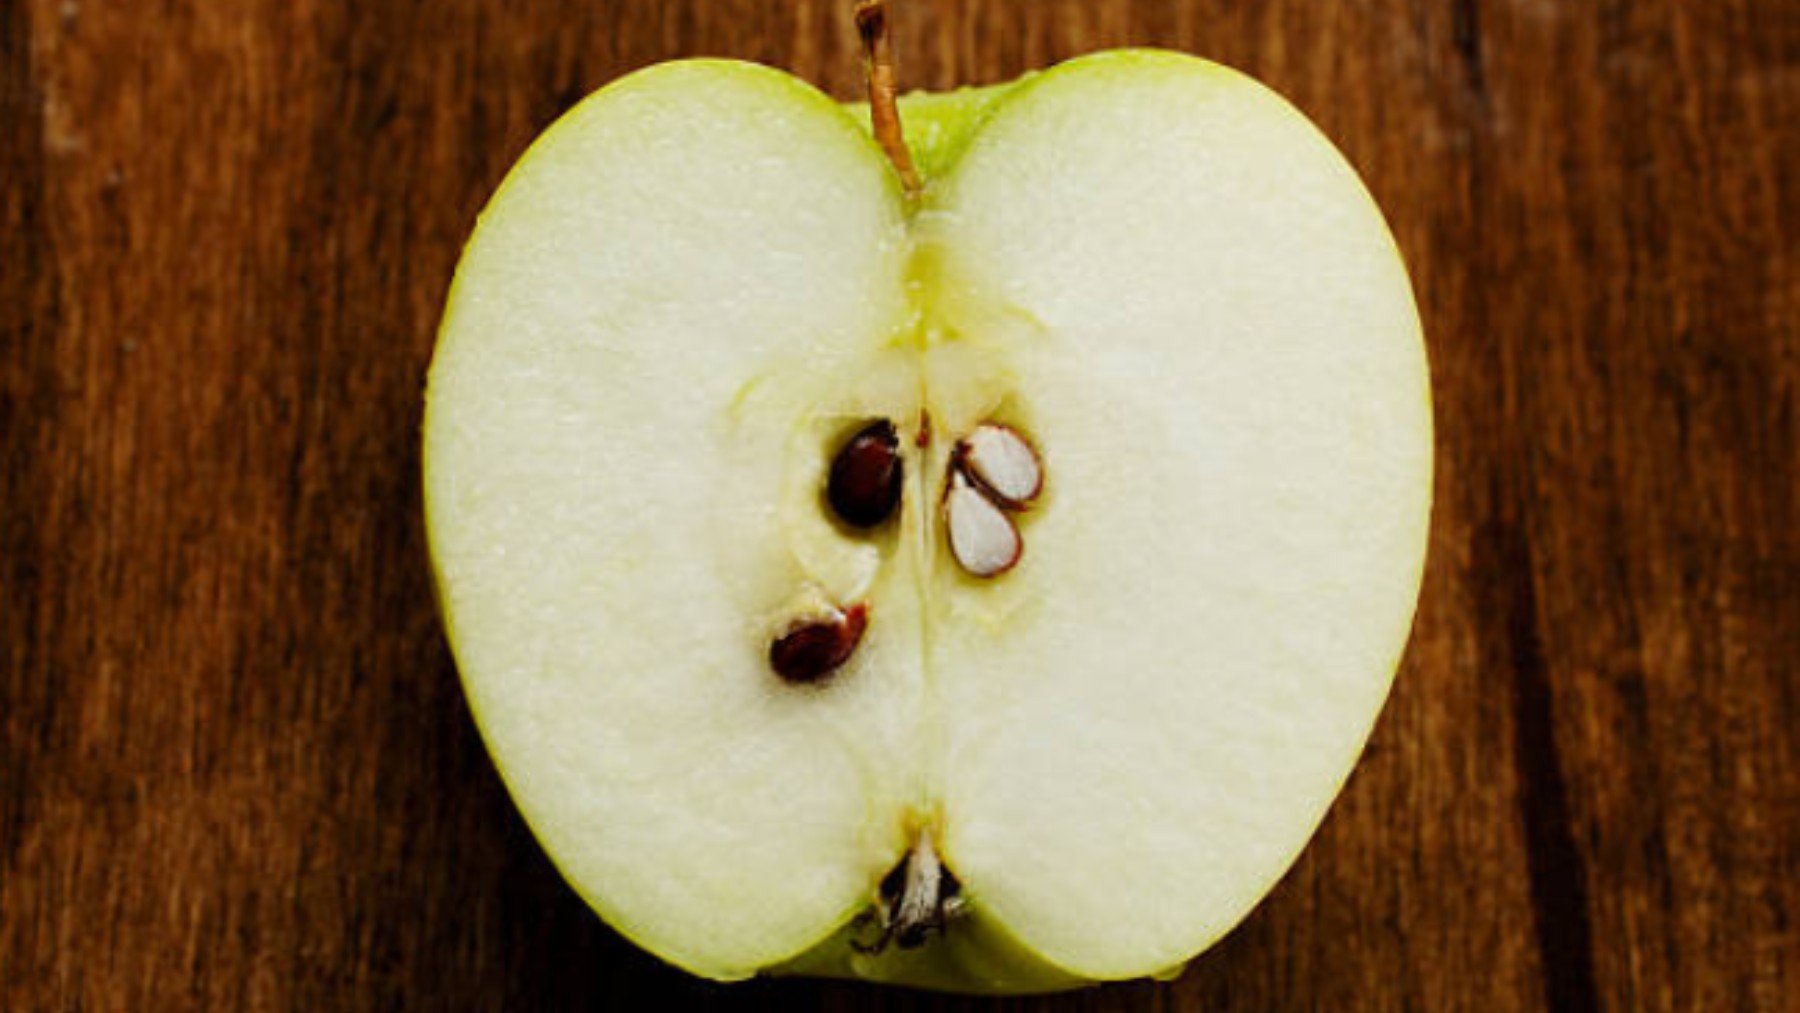 El peligro de comerte esta parte de la manzana: podrías envenenarte